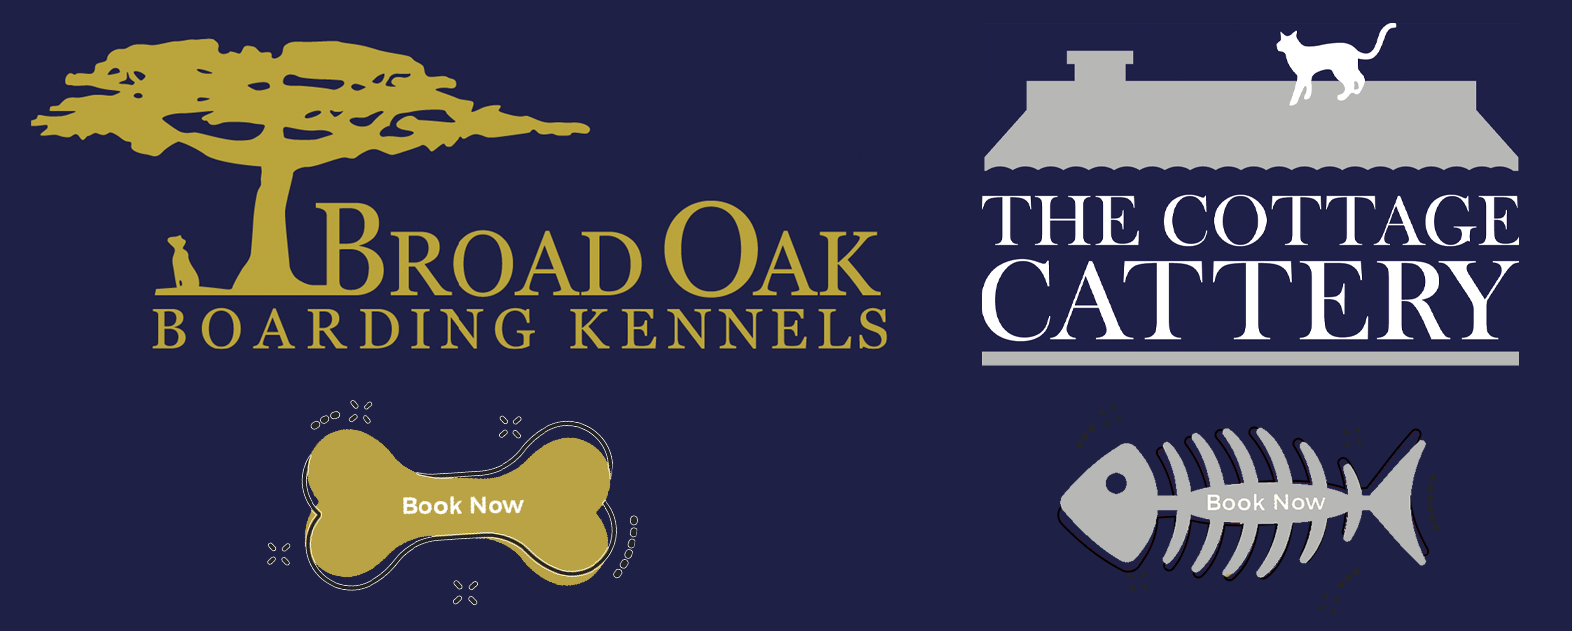 Broad Oak Kennels